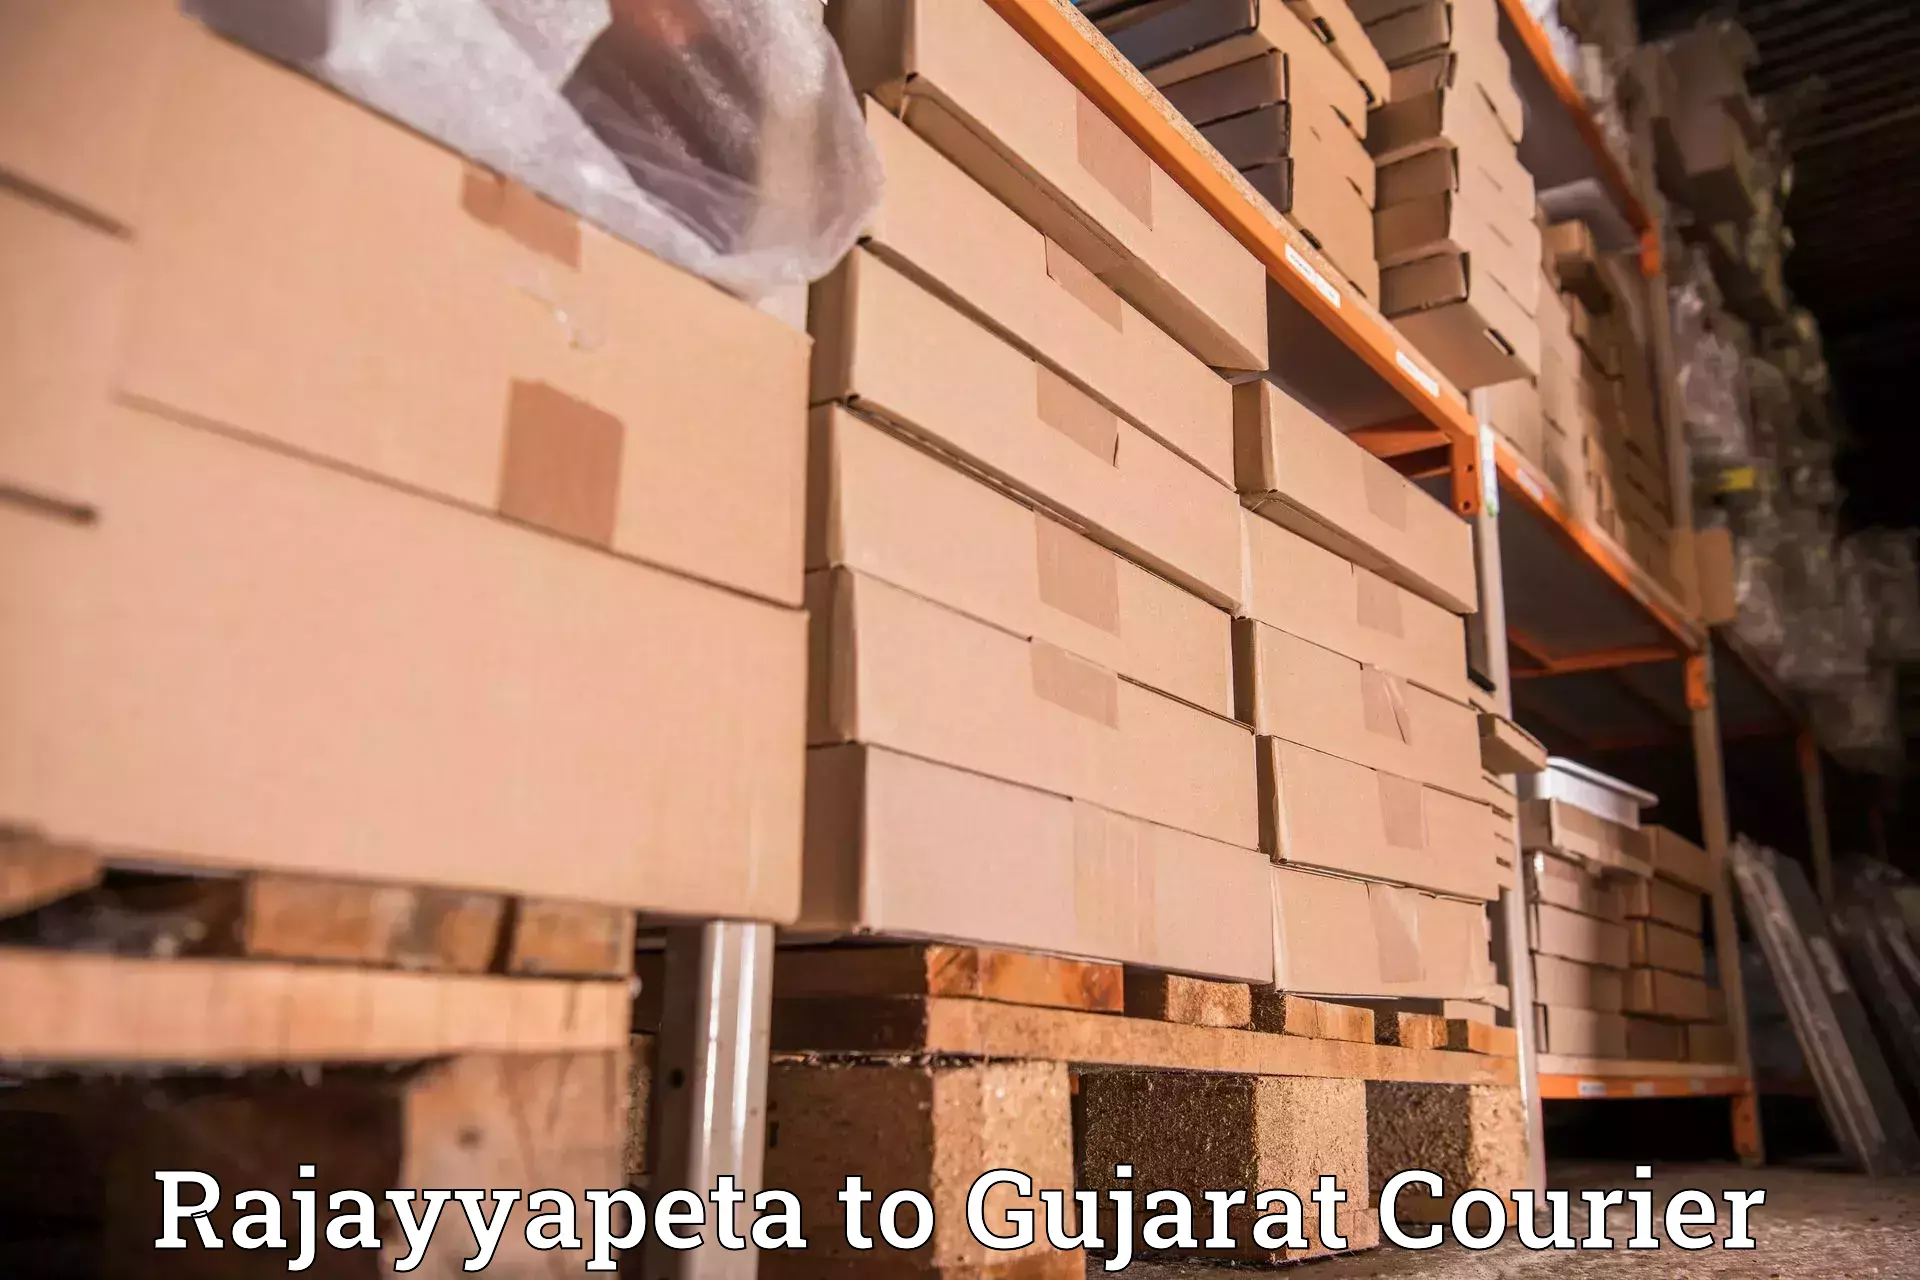 Urgent courier needs Rajayyapeta to Bhuj